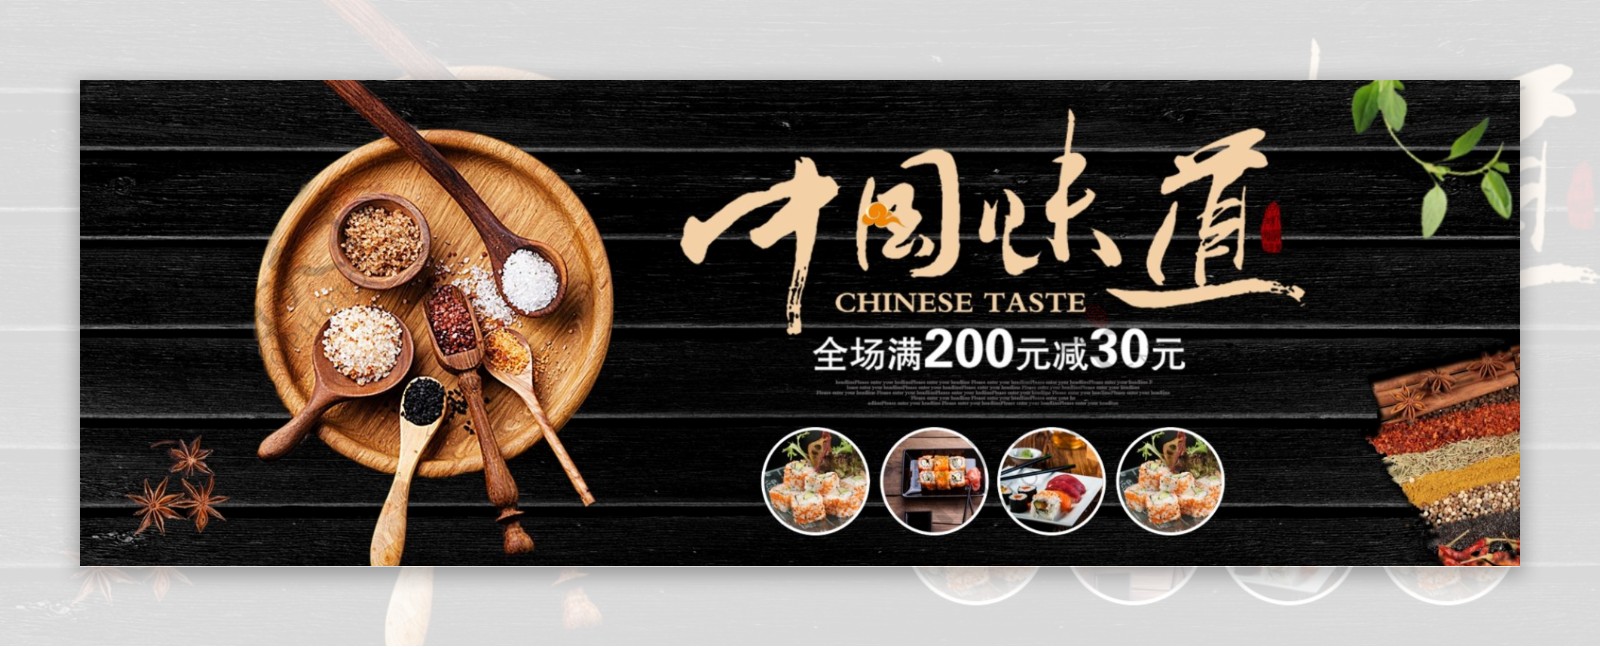 中国味道食品海报